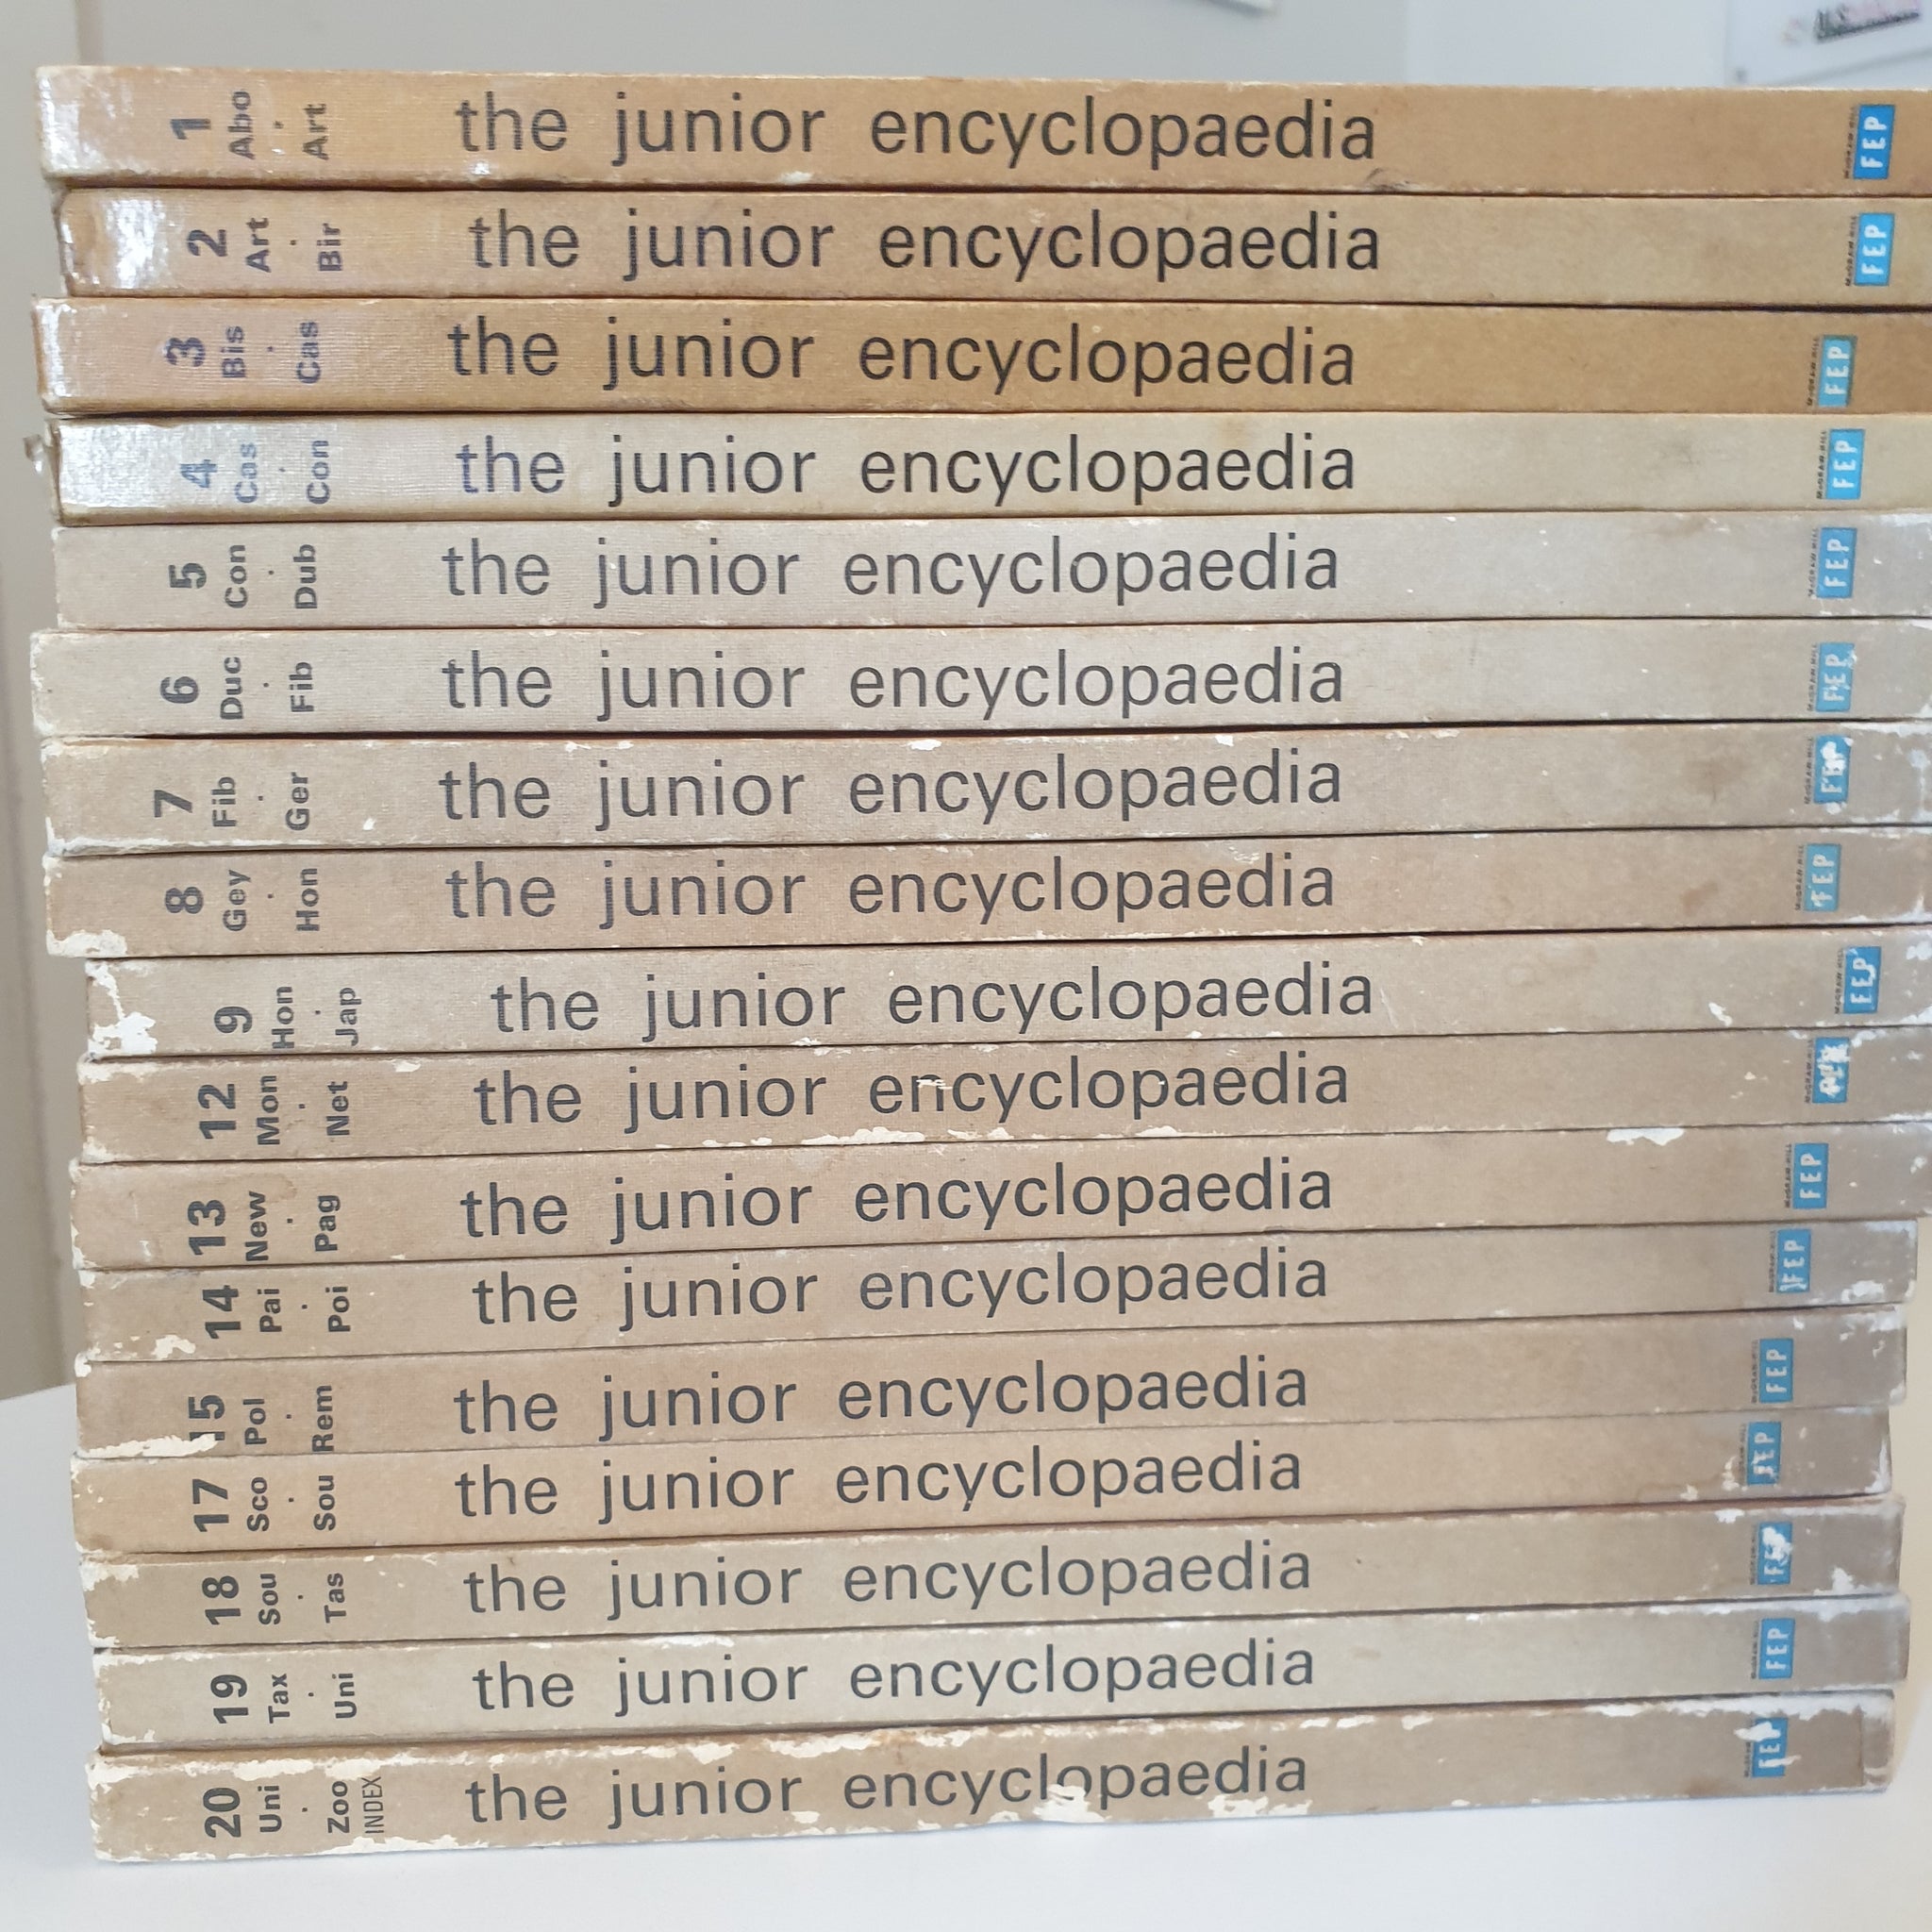 The Junior Encyclopaedia